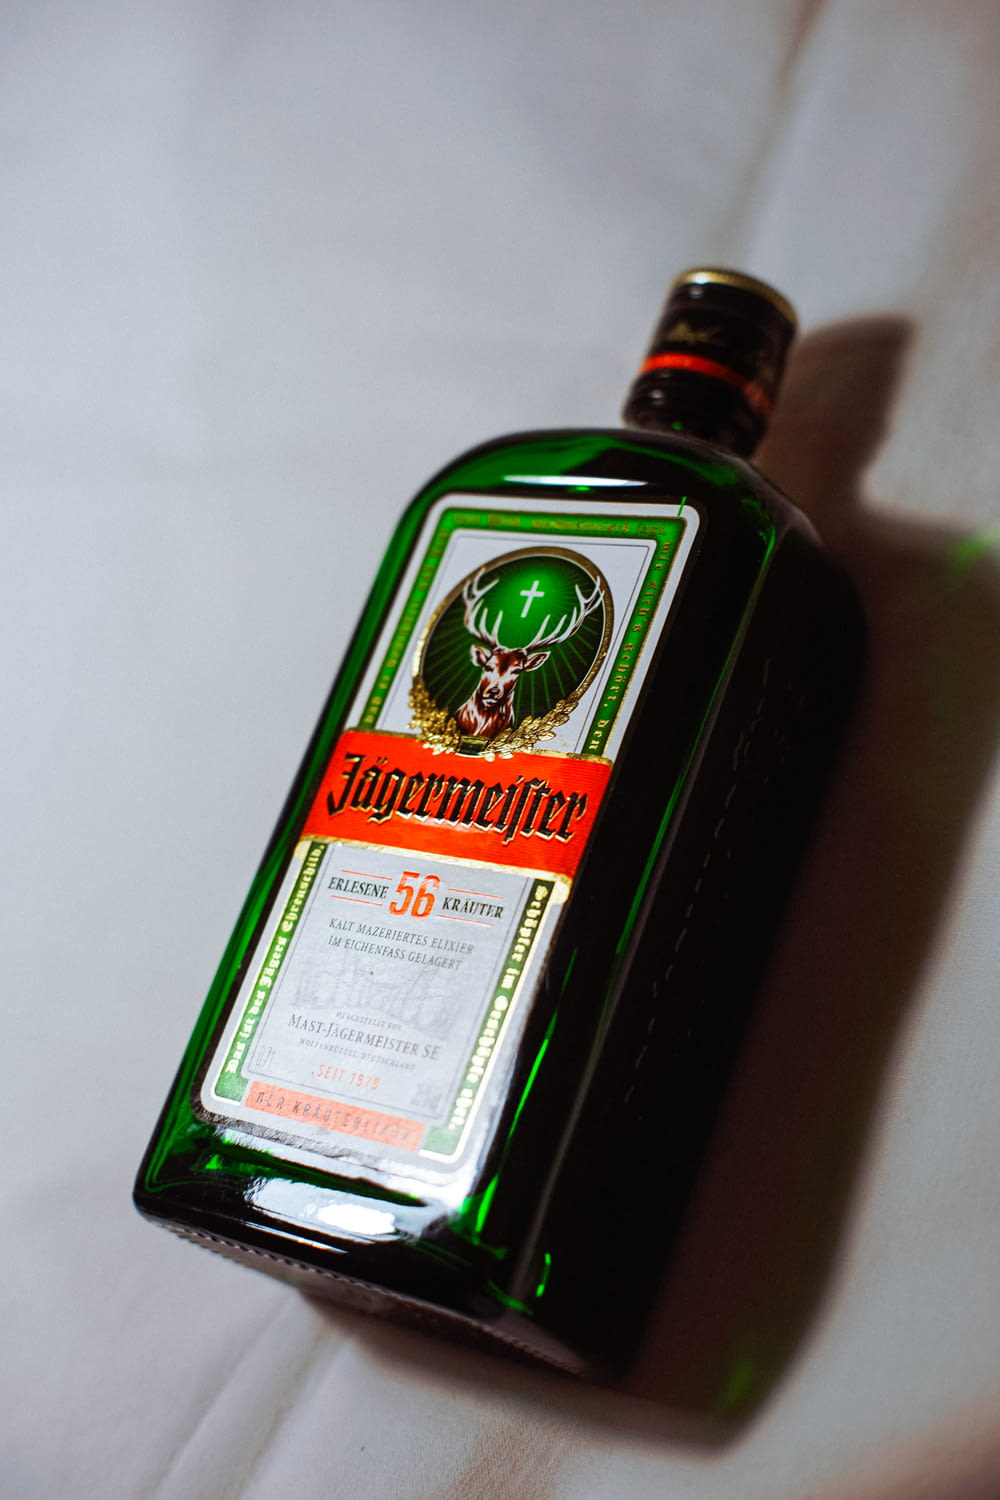 Botella con etiqueta verde y blanca